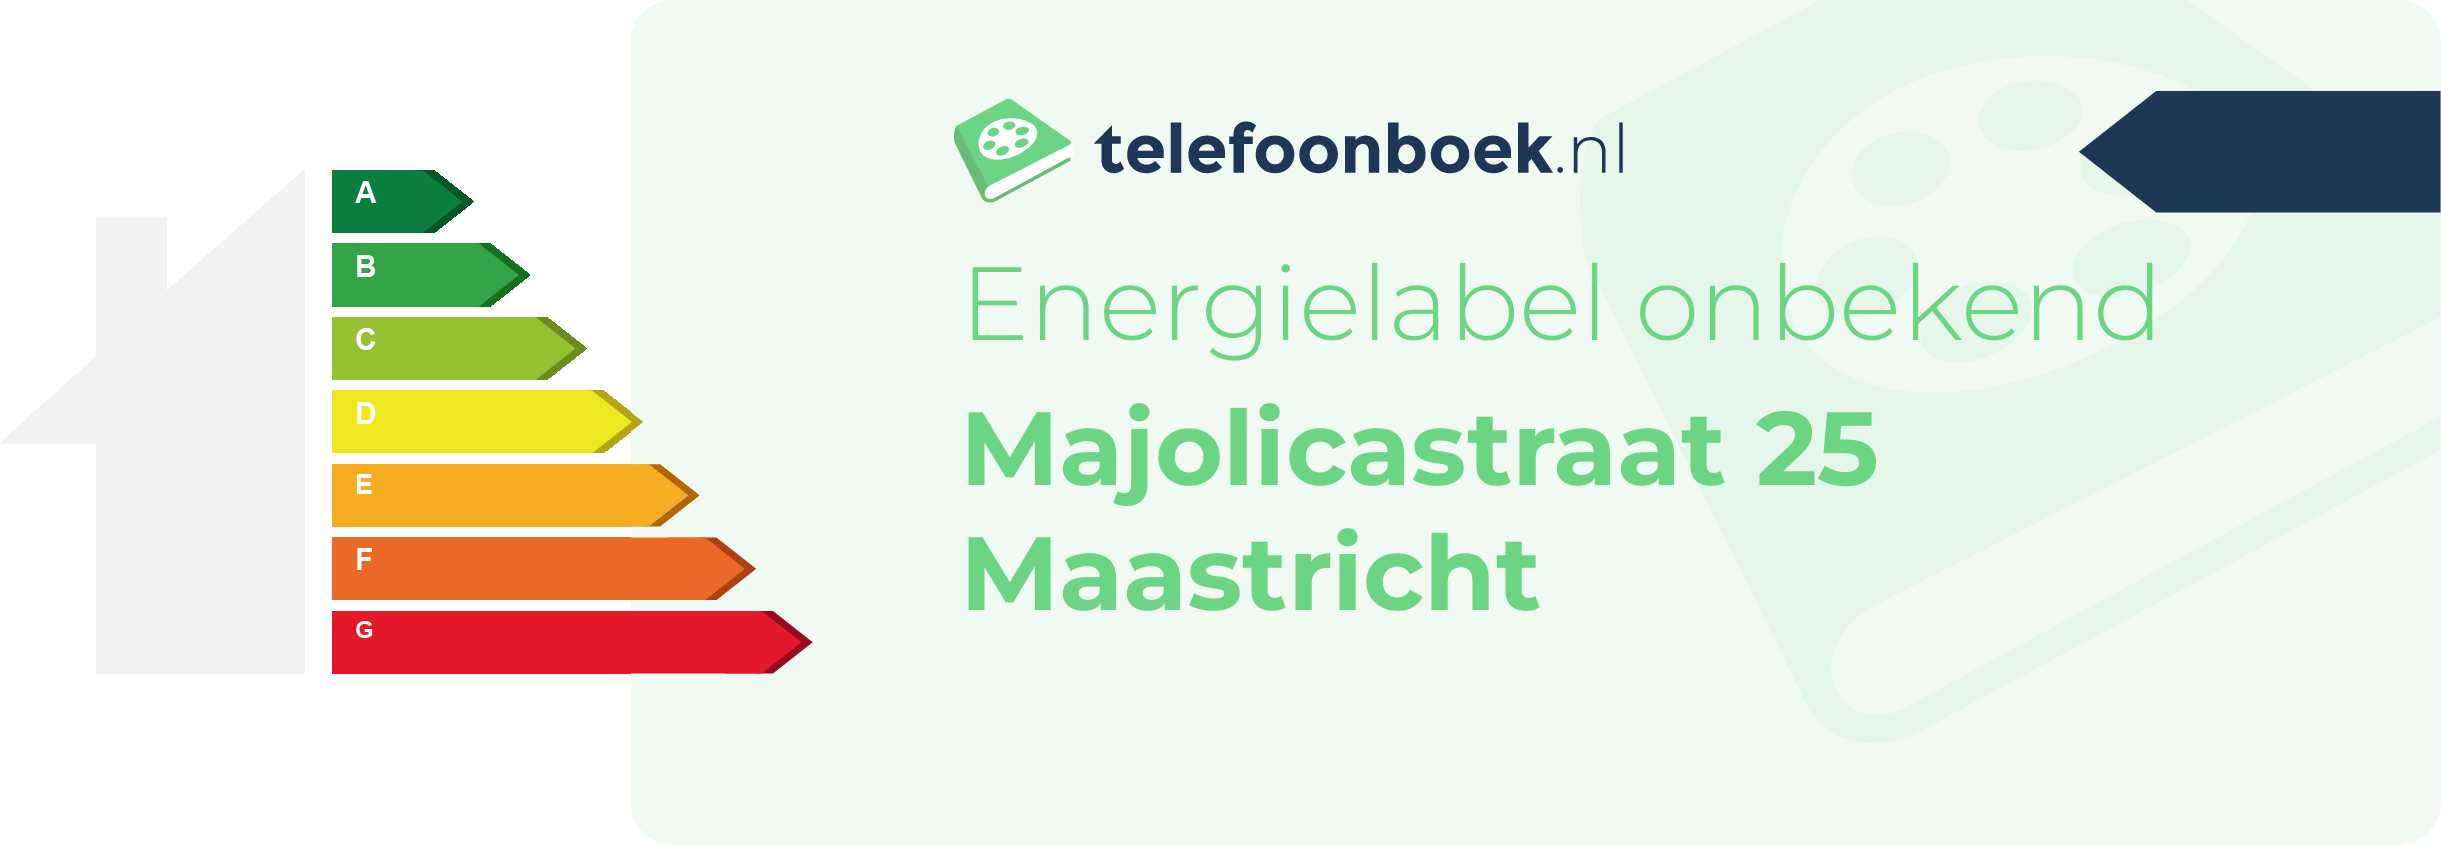 Energielabel Majolicastraat 25 Maastricht